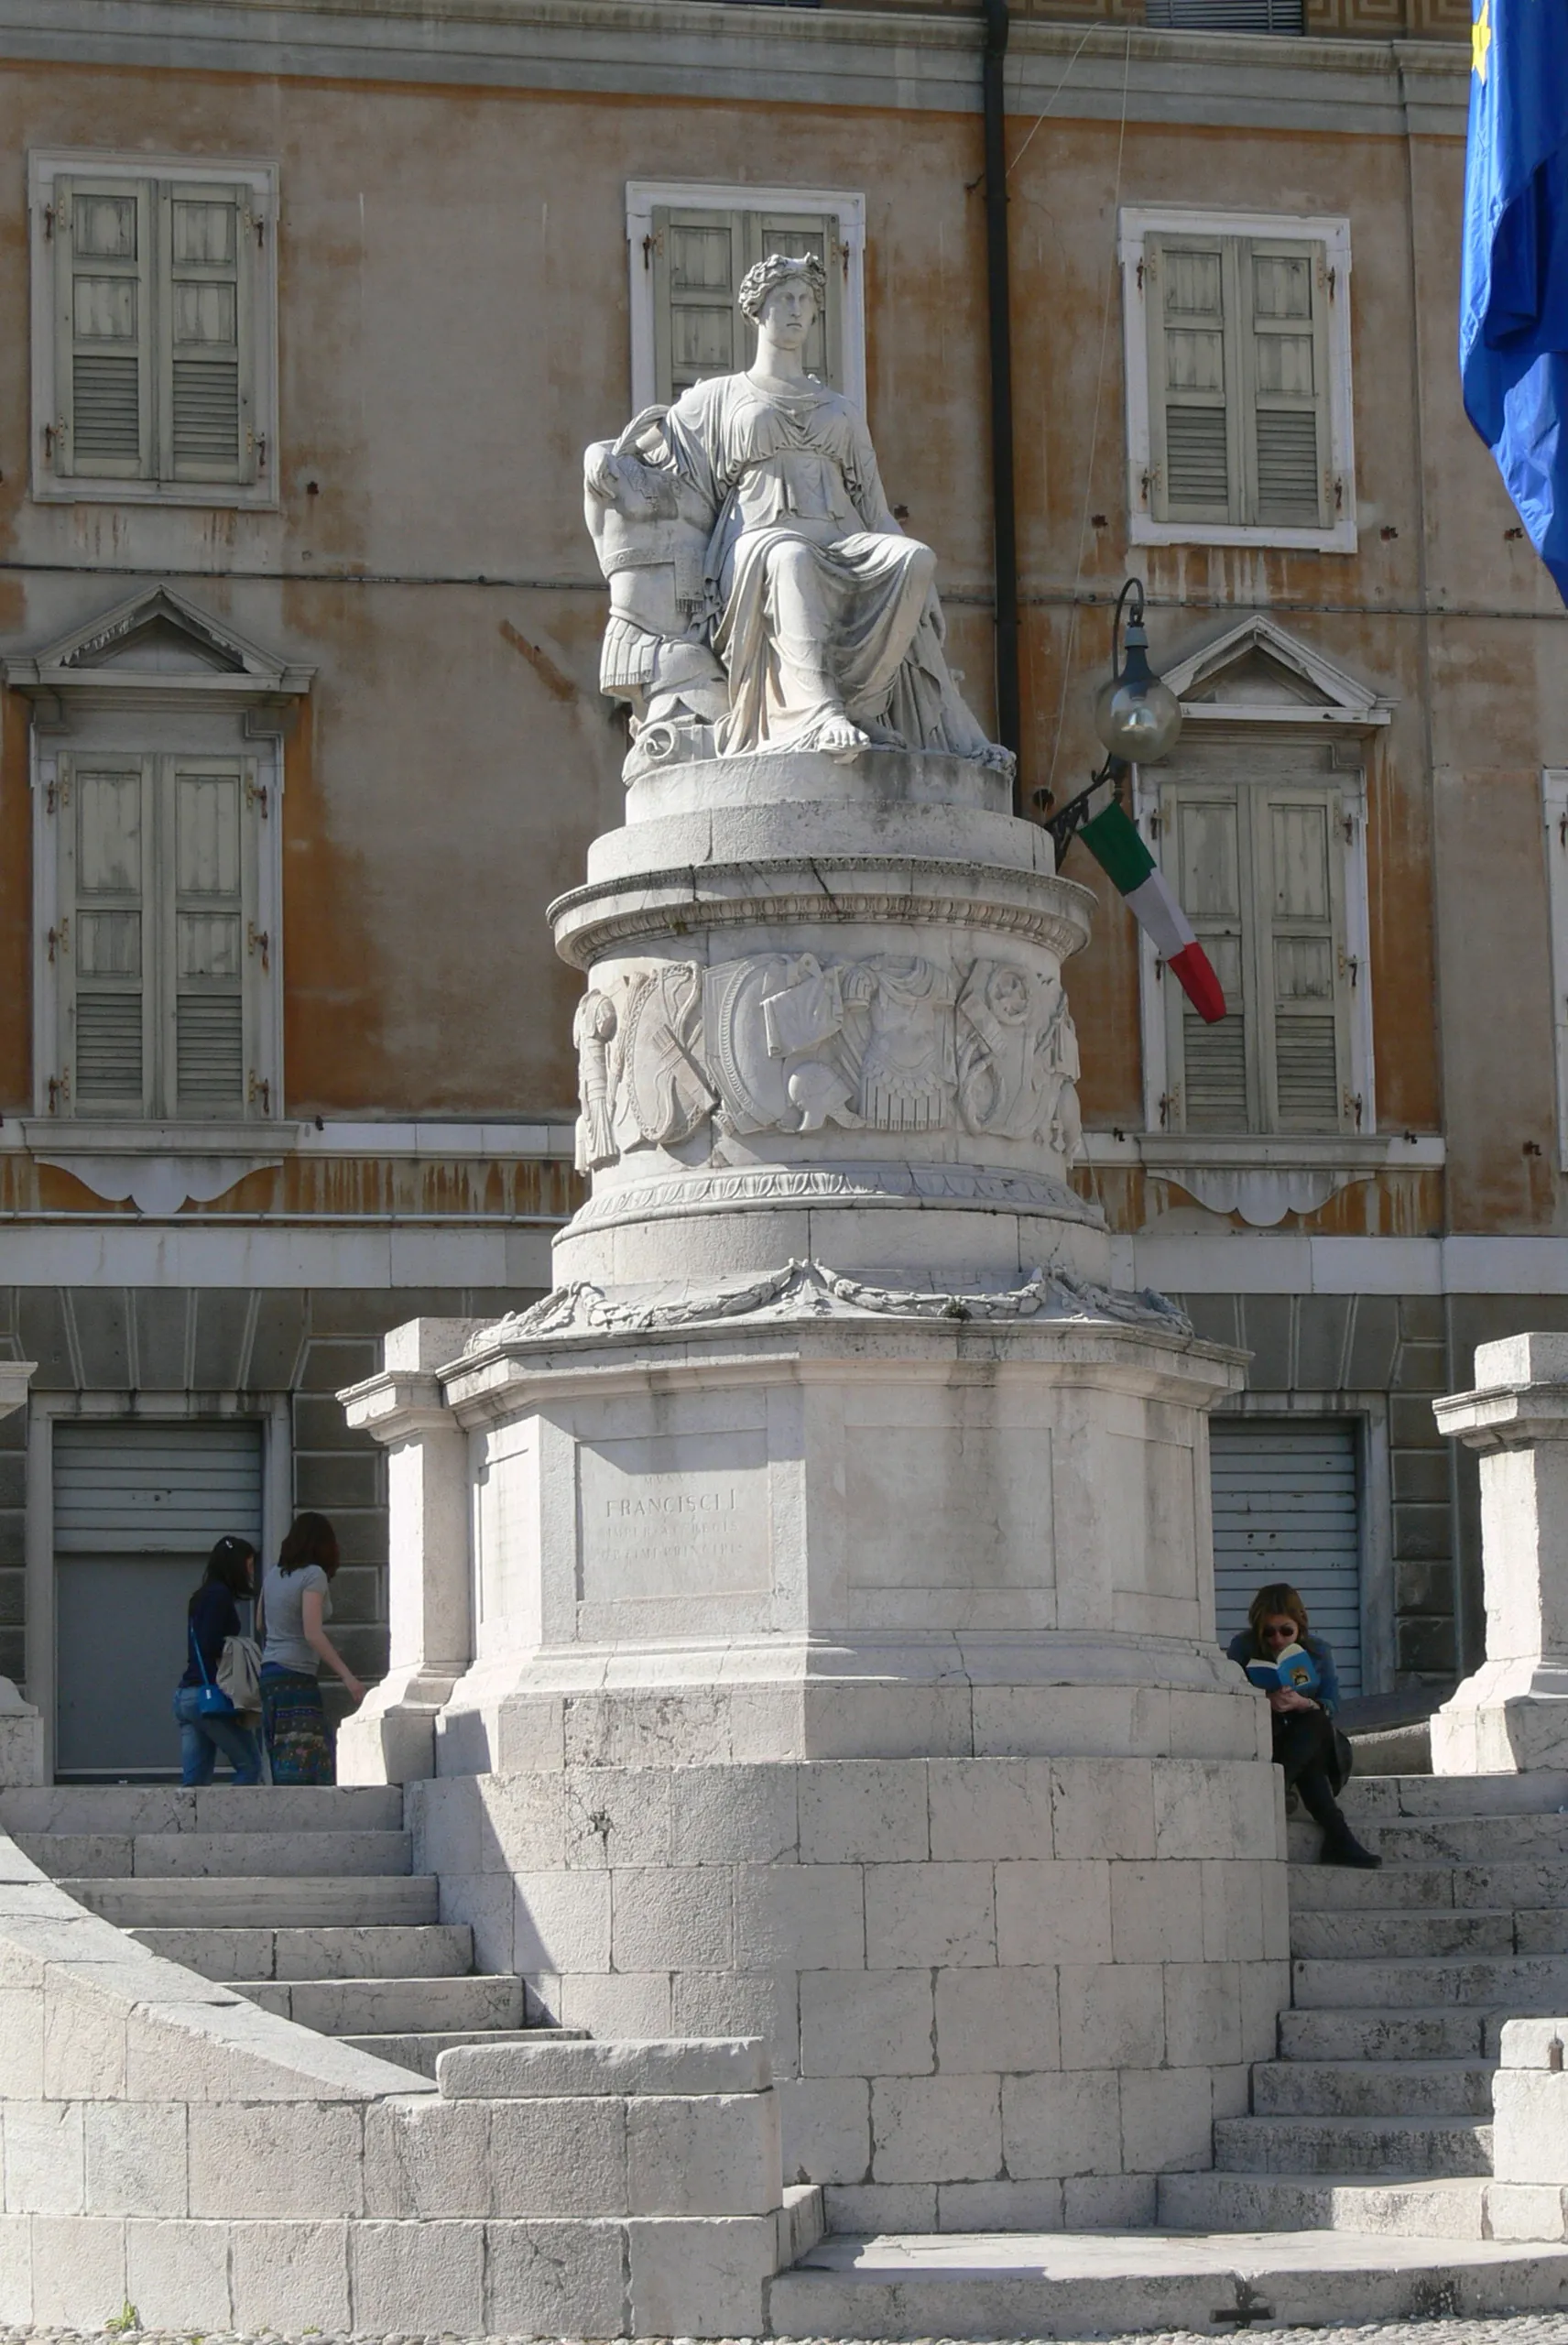 Afbeelding van Friuli-Venezia Giulia